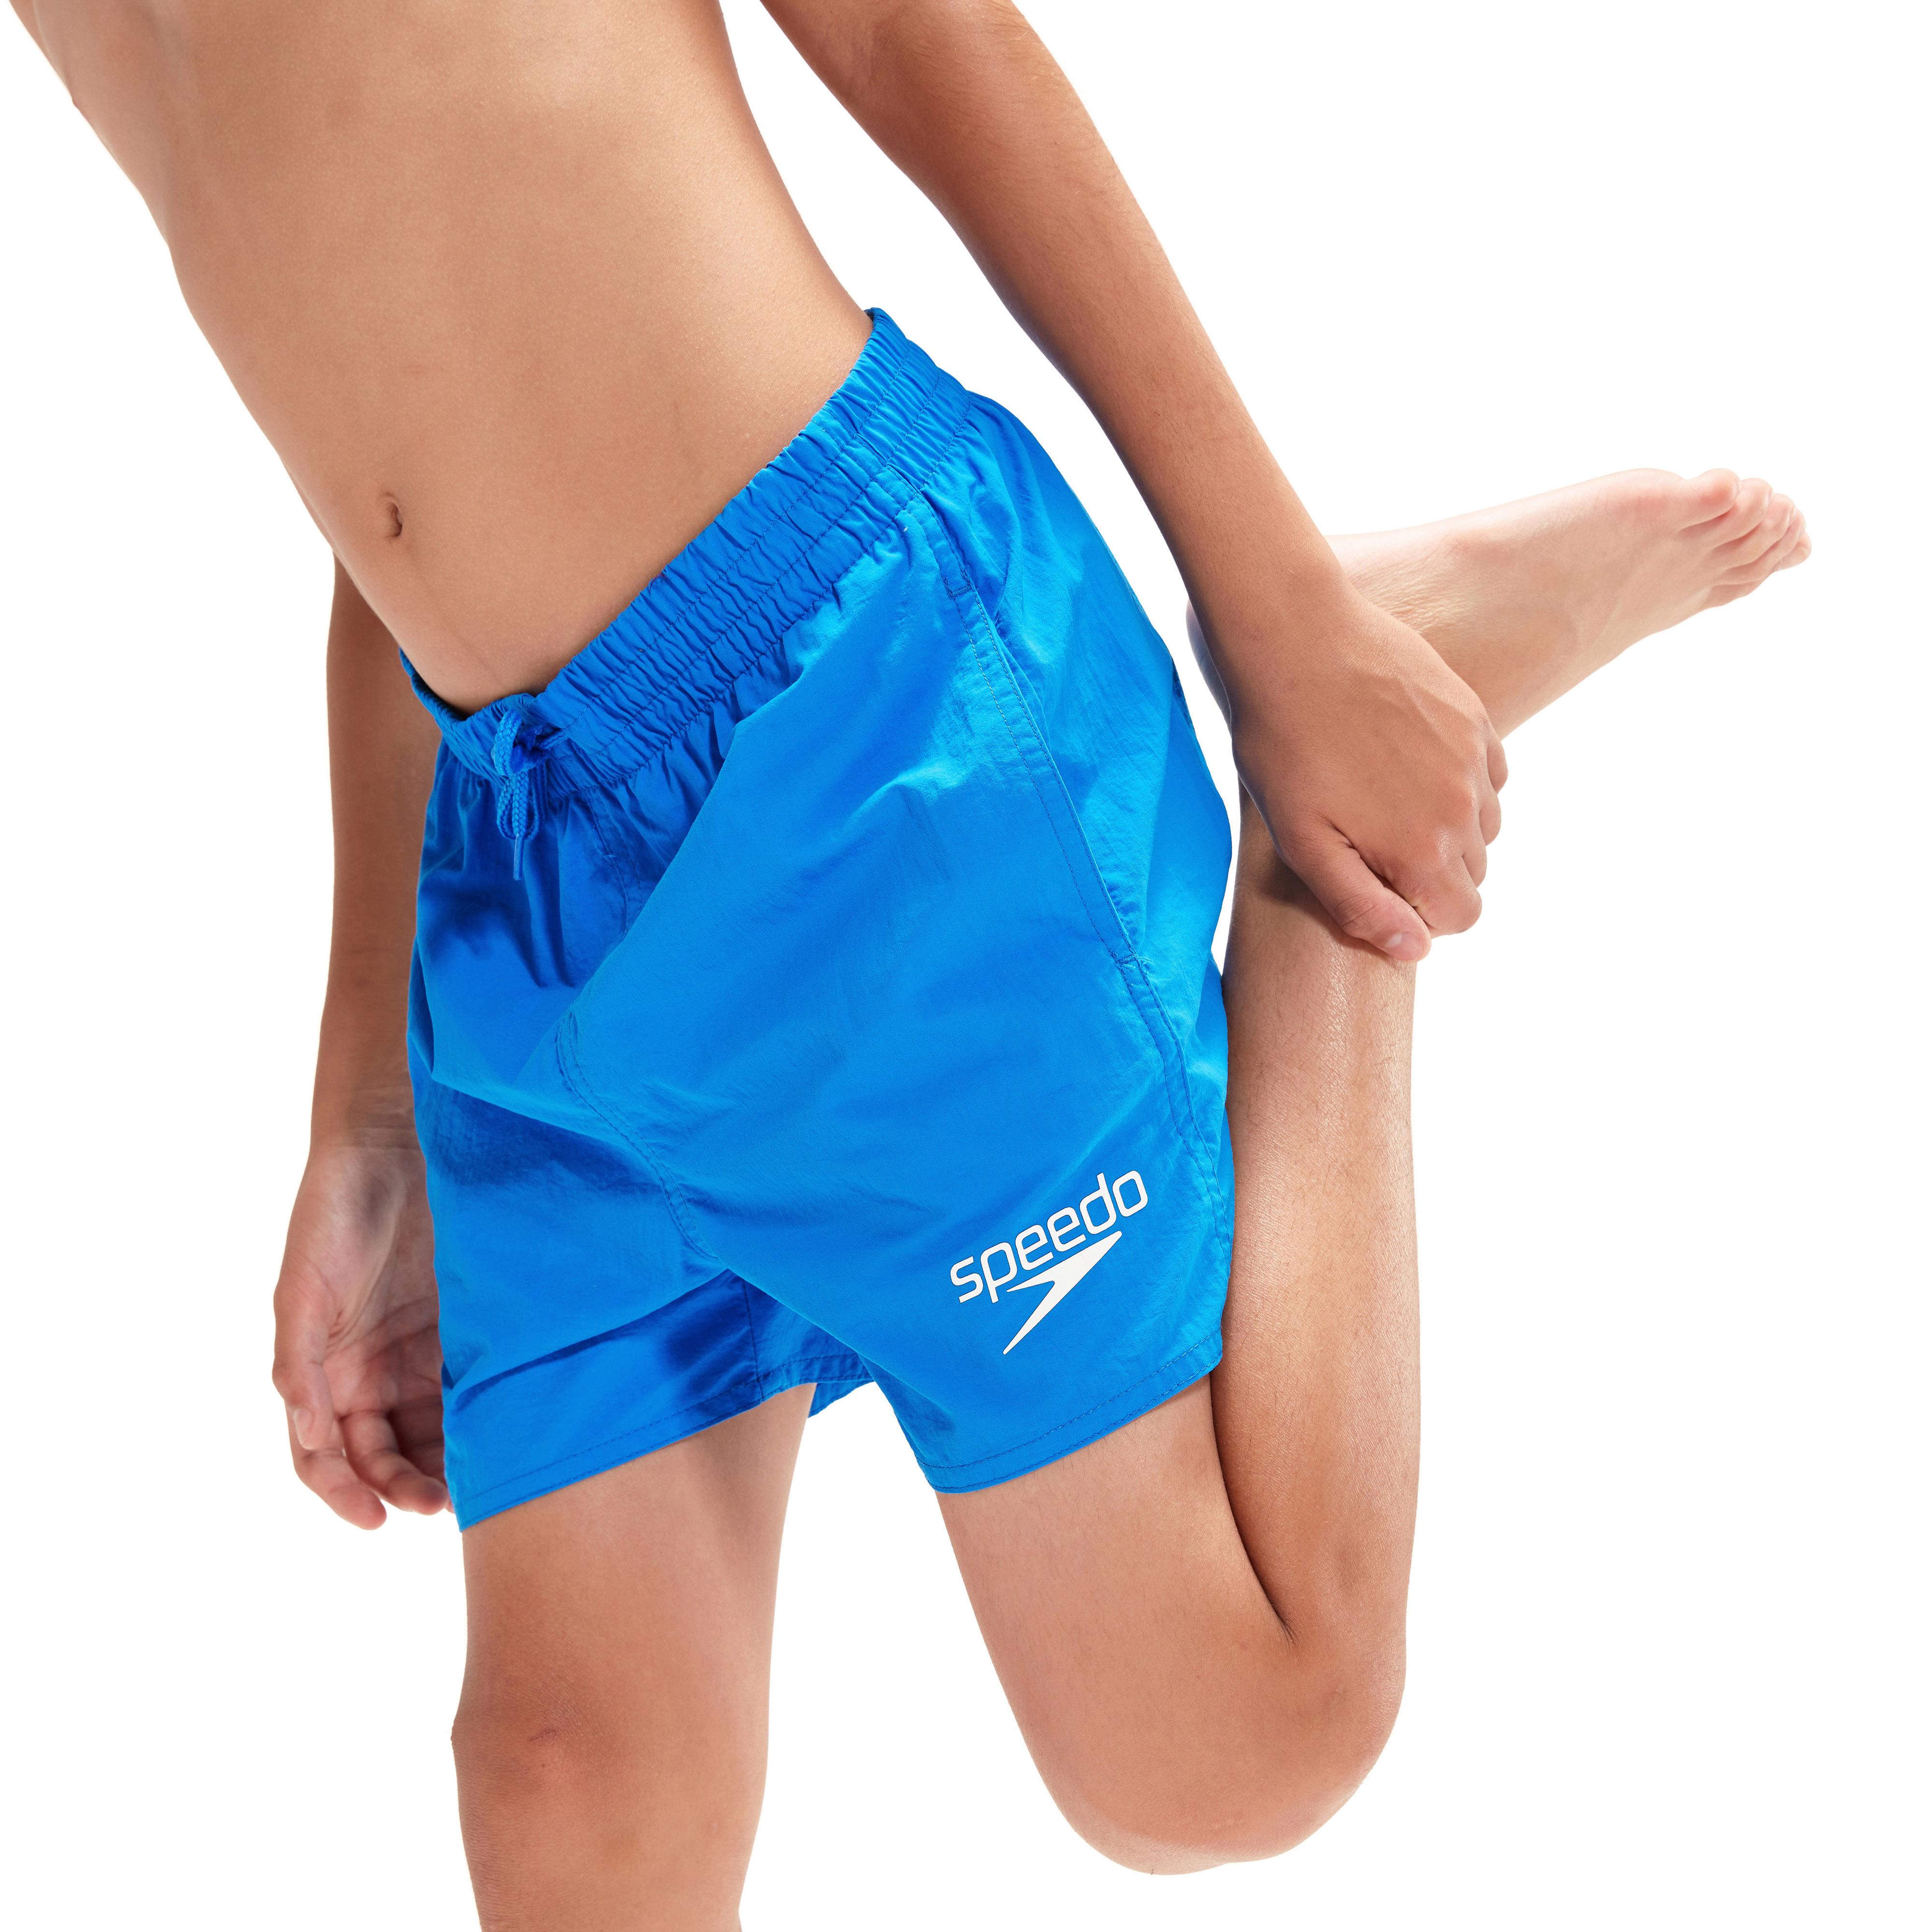 SPEEDO ESSENTIAL Online Badehose Jungen von bondi Shop blue kaufen im SportScheck